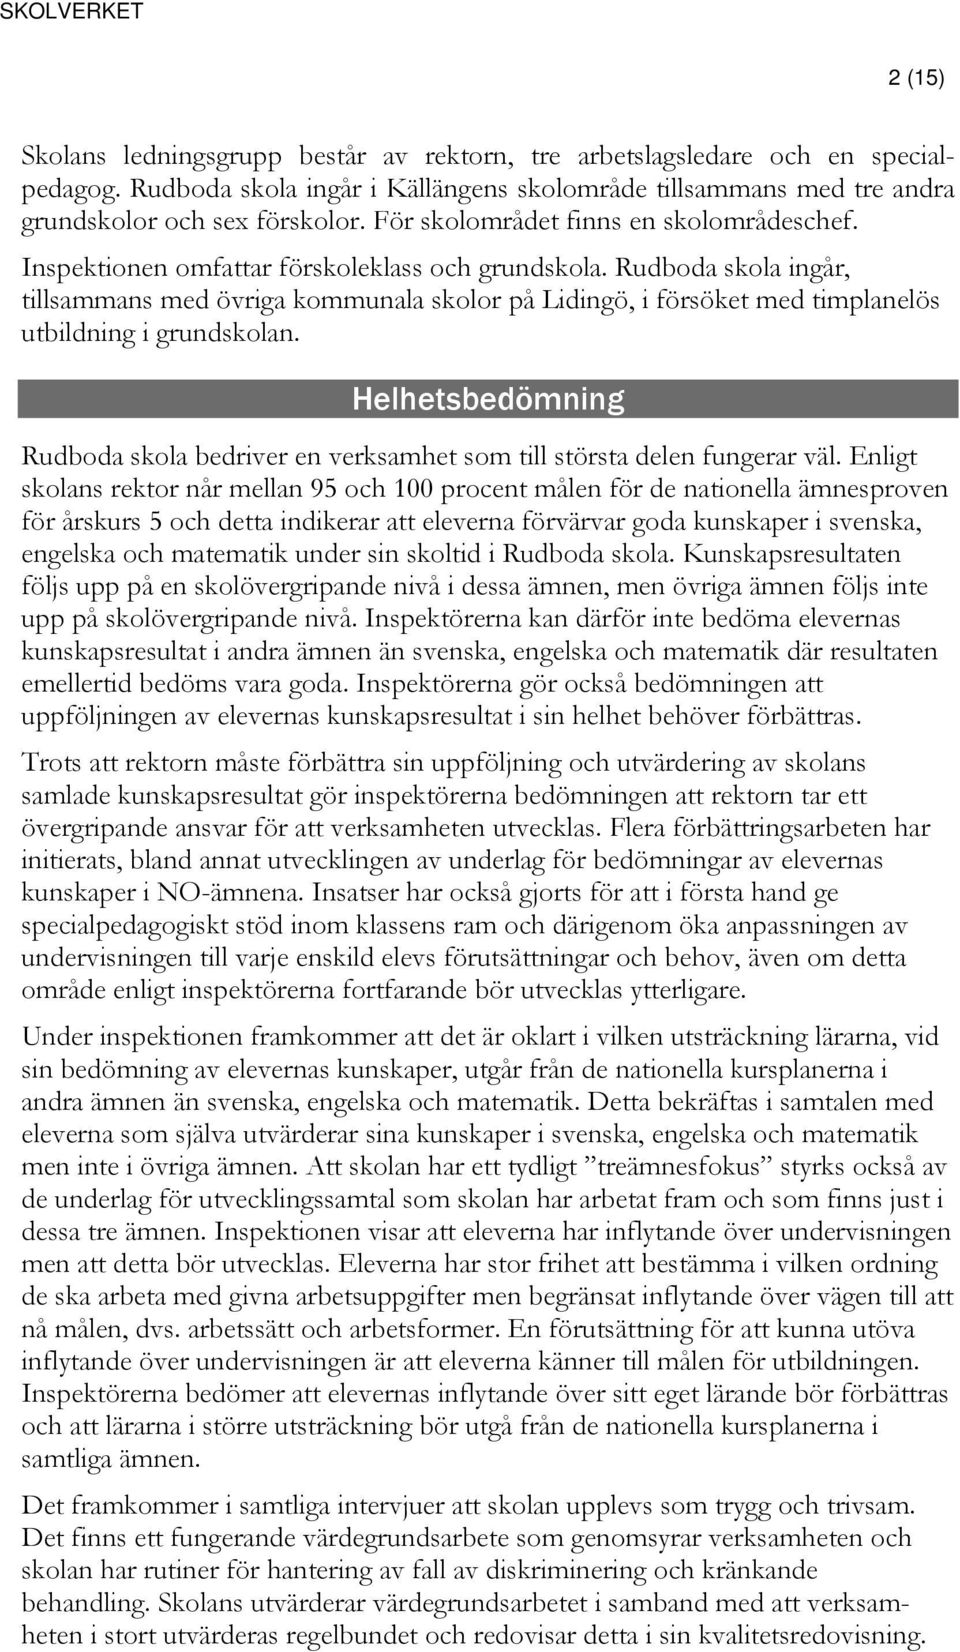 Rudboda skola ingår, tillsammans med övriga kommunala skolor på Lidingö, i försöket med timplanelös utbildning i grundskolan.